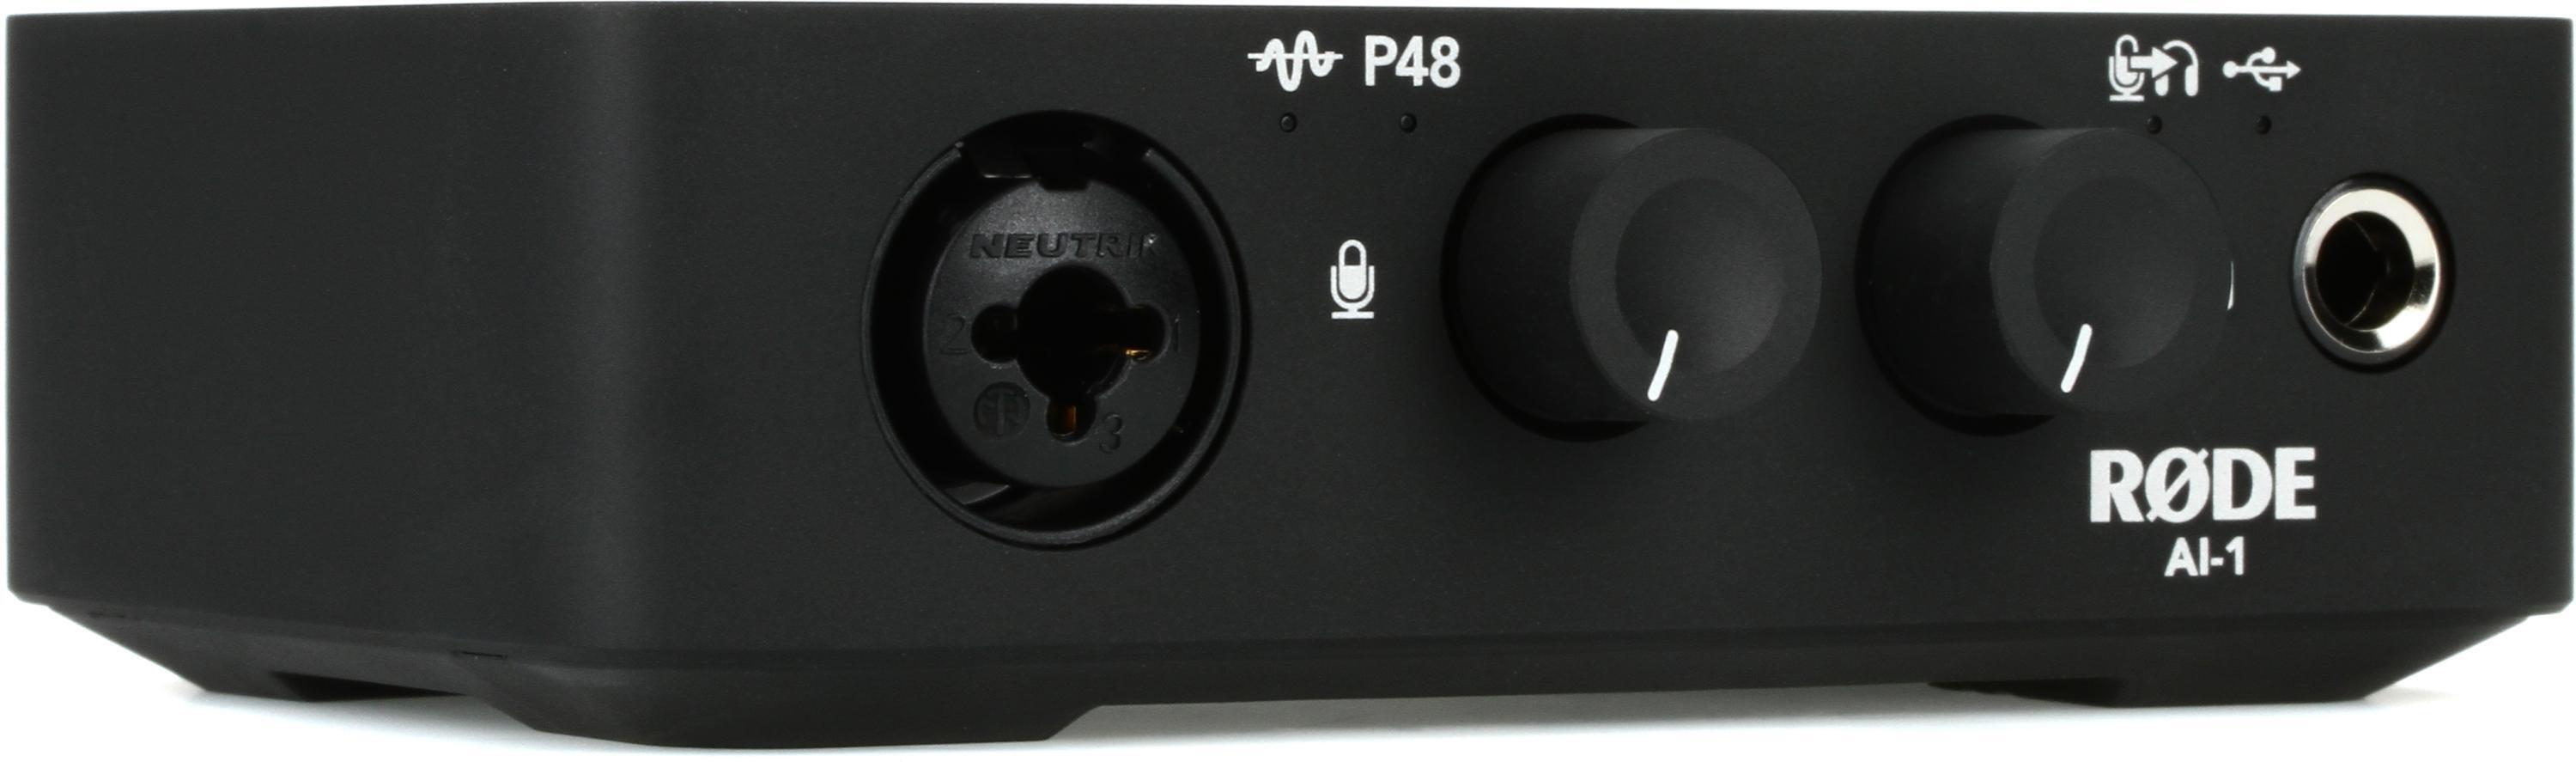 Bundled Item: Rode AI-1 USB Audio Interface